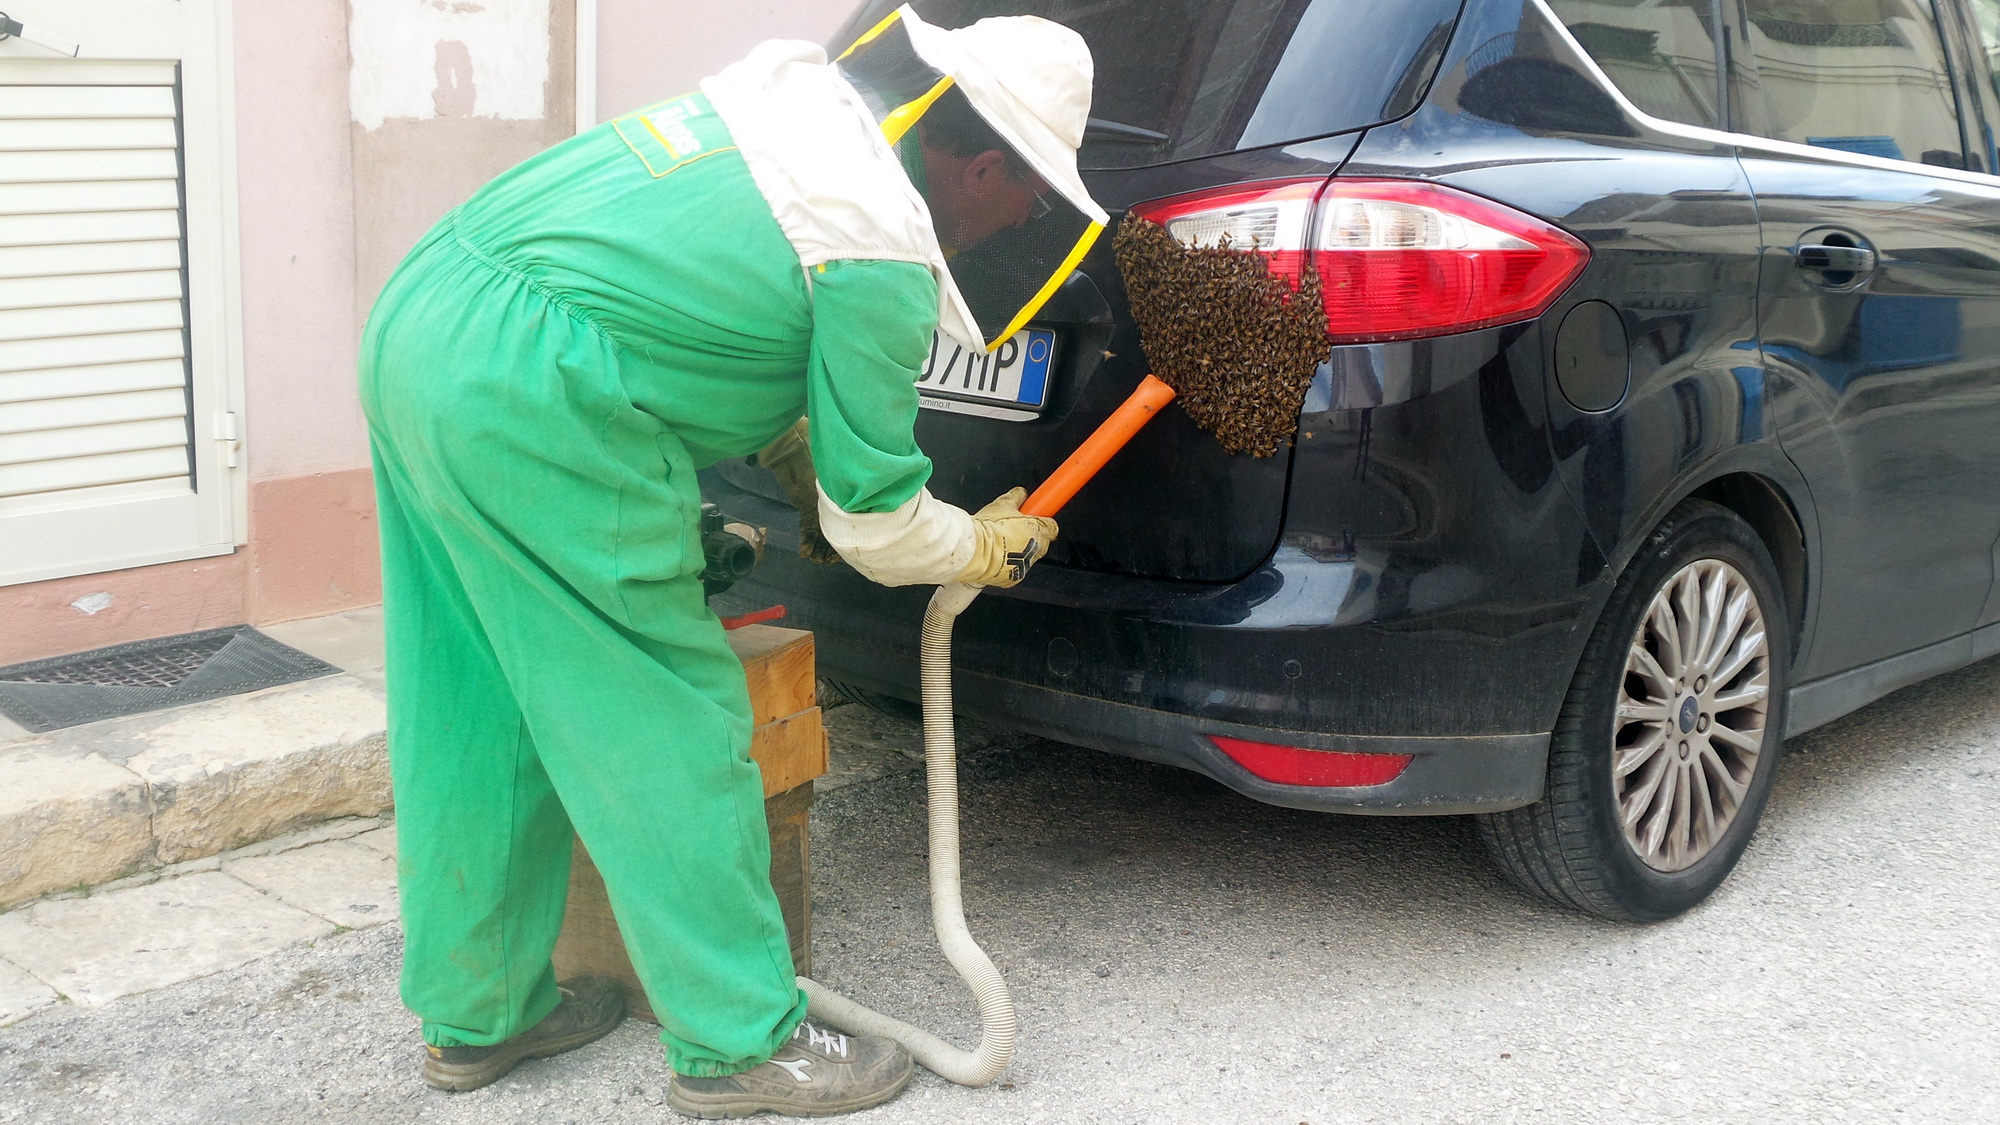  Ospiti a sorpresa sul retro dell’auto: sciame d’api messo in salvo dagli esperti